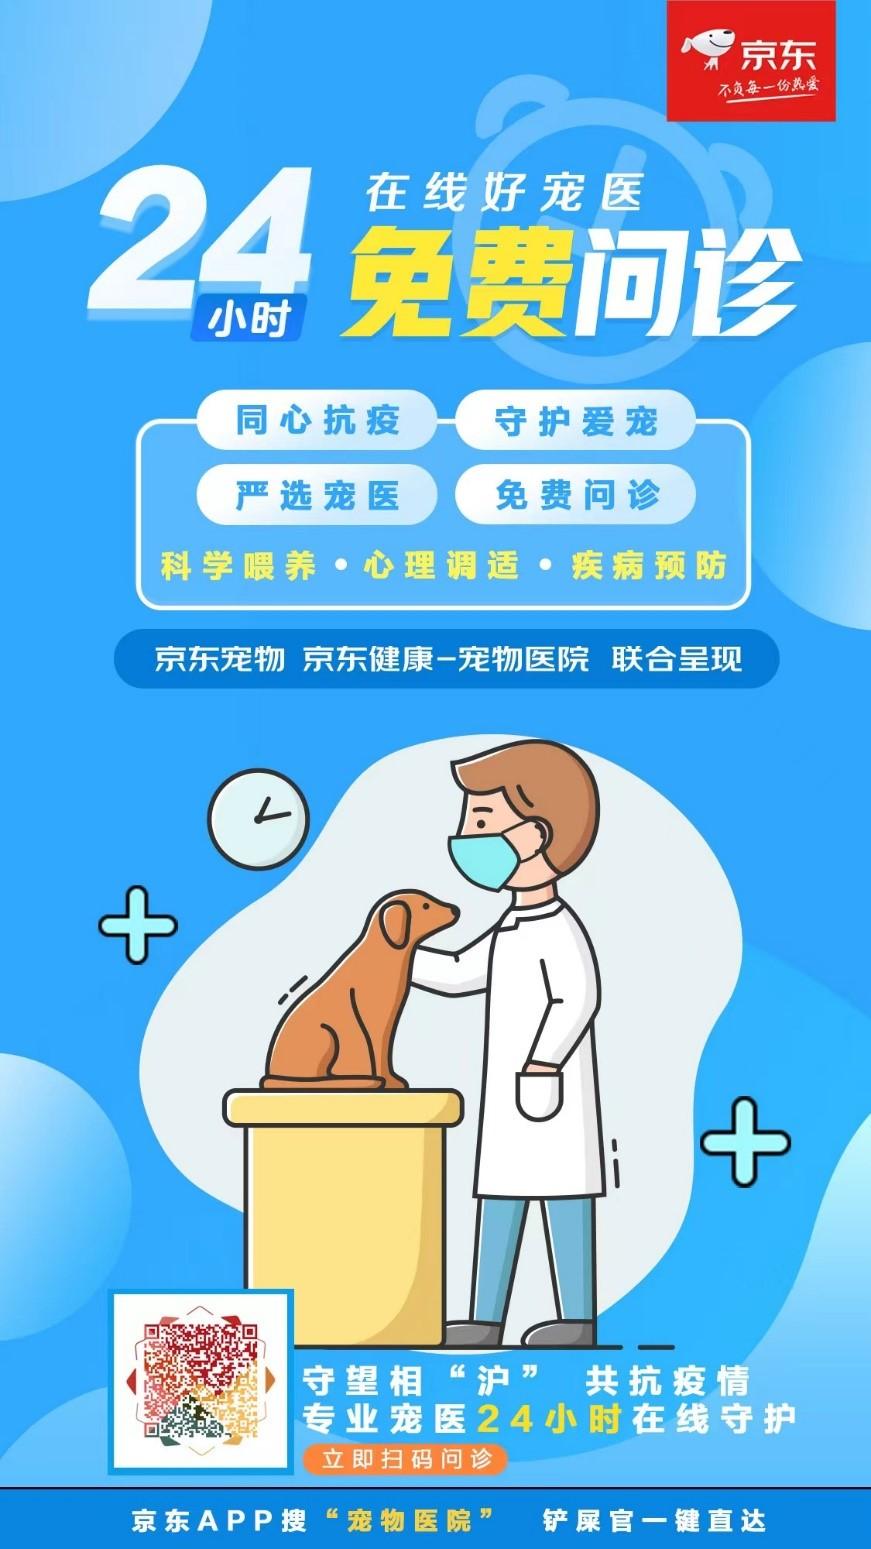 最全疫情期间宠物养育指南发布 京东宠物医院携5000专业宠物医生启动线上免费问诊